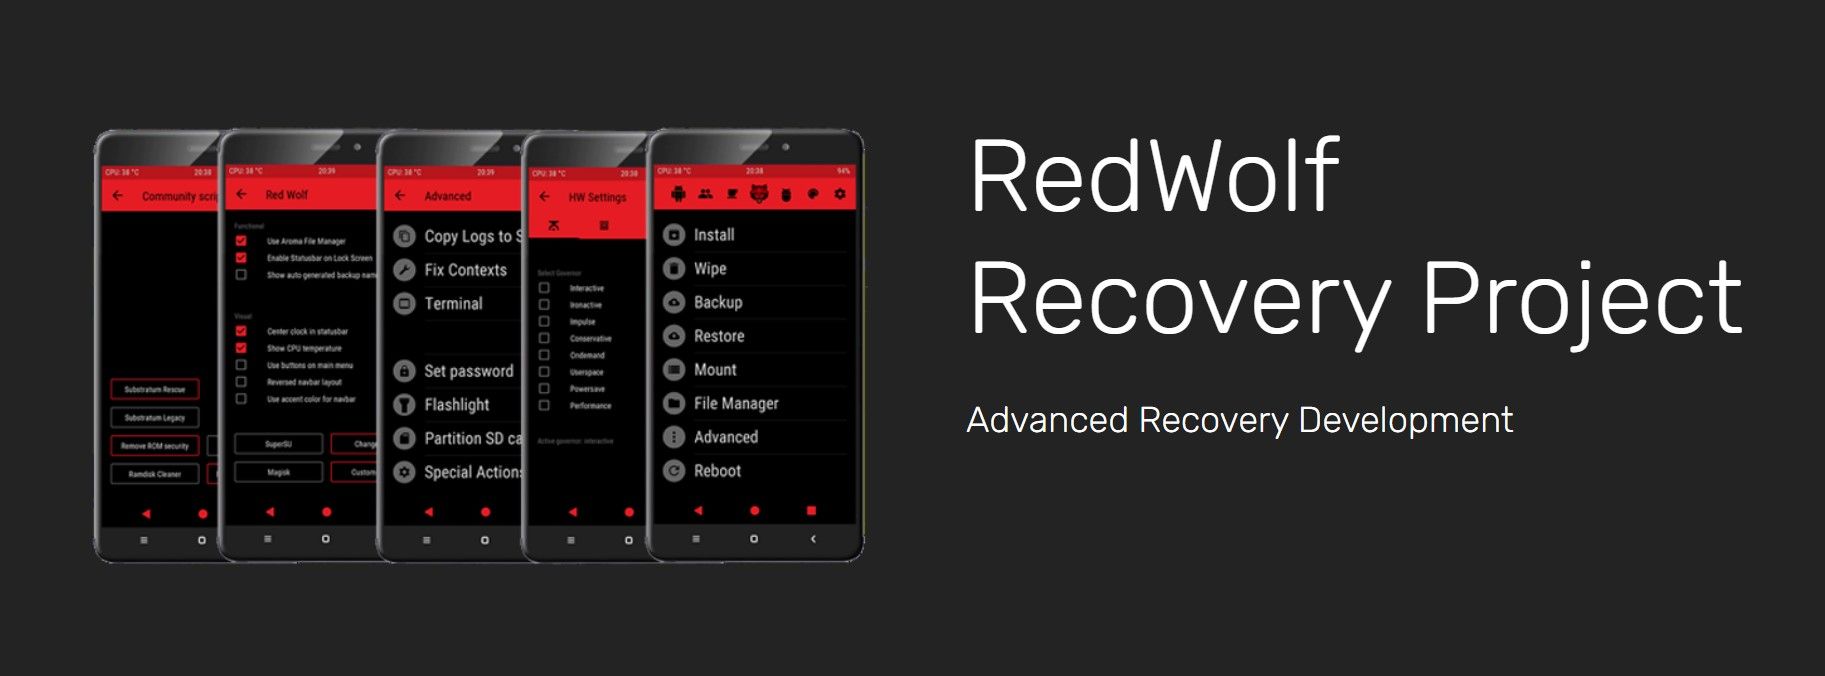 snippet de site do projeto de recuperação redwolf